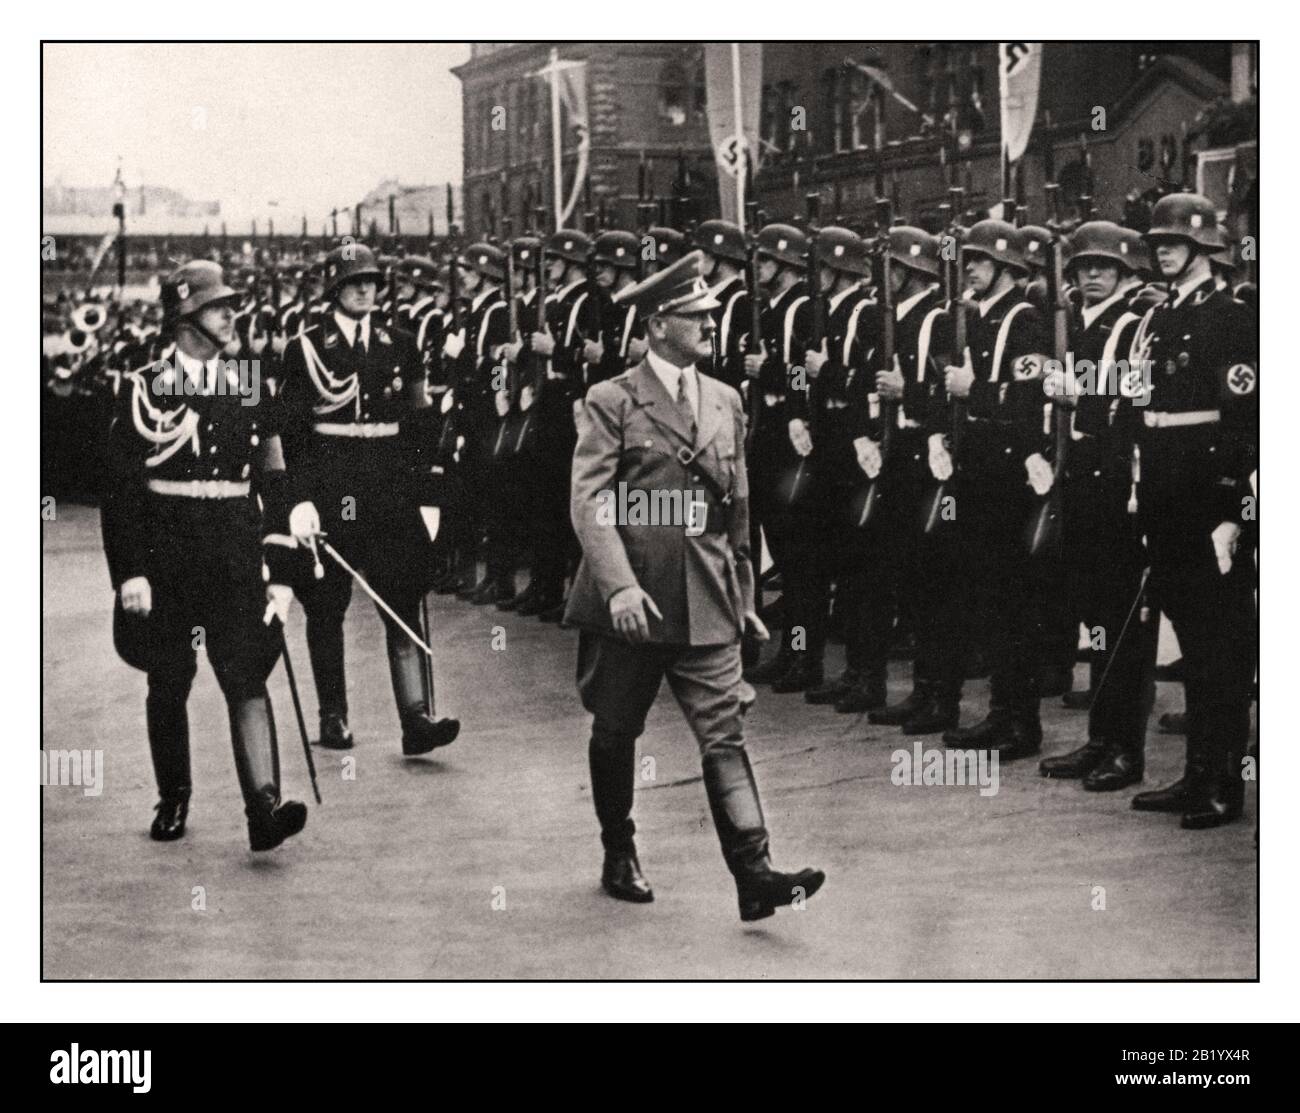 Archive Adolf Hitler des années 1930 examinant les Troupes nazi WAFFEN SS à Nuremberg. Il est accompagné du chef de la SS Heinrich Himmler Reichsführer de la Schutzstapoel, Allemagne Banque D'Images